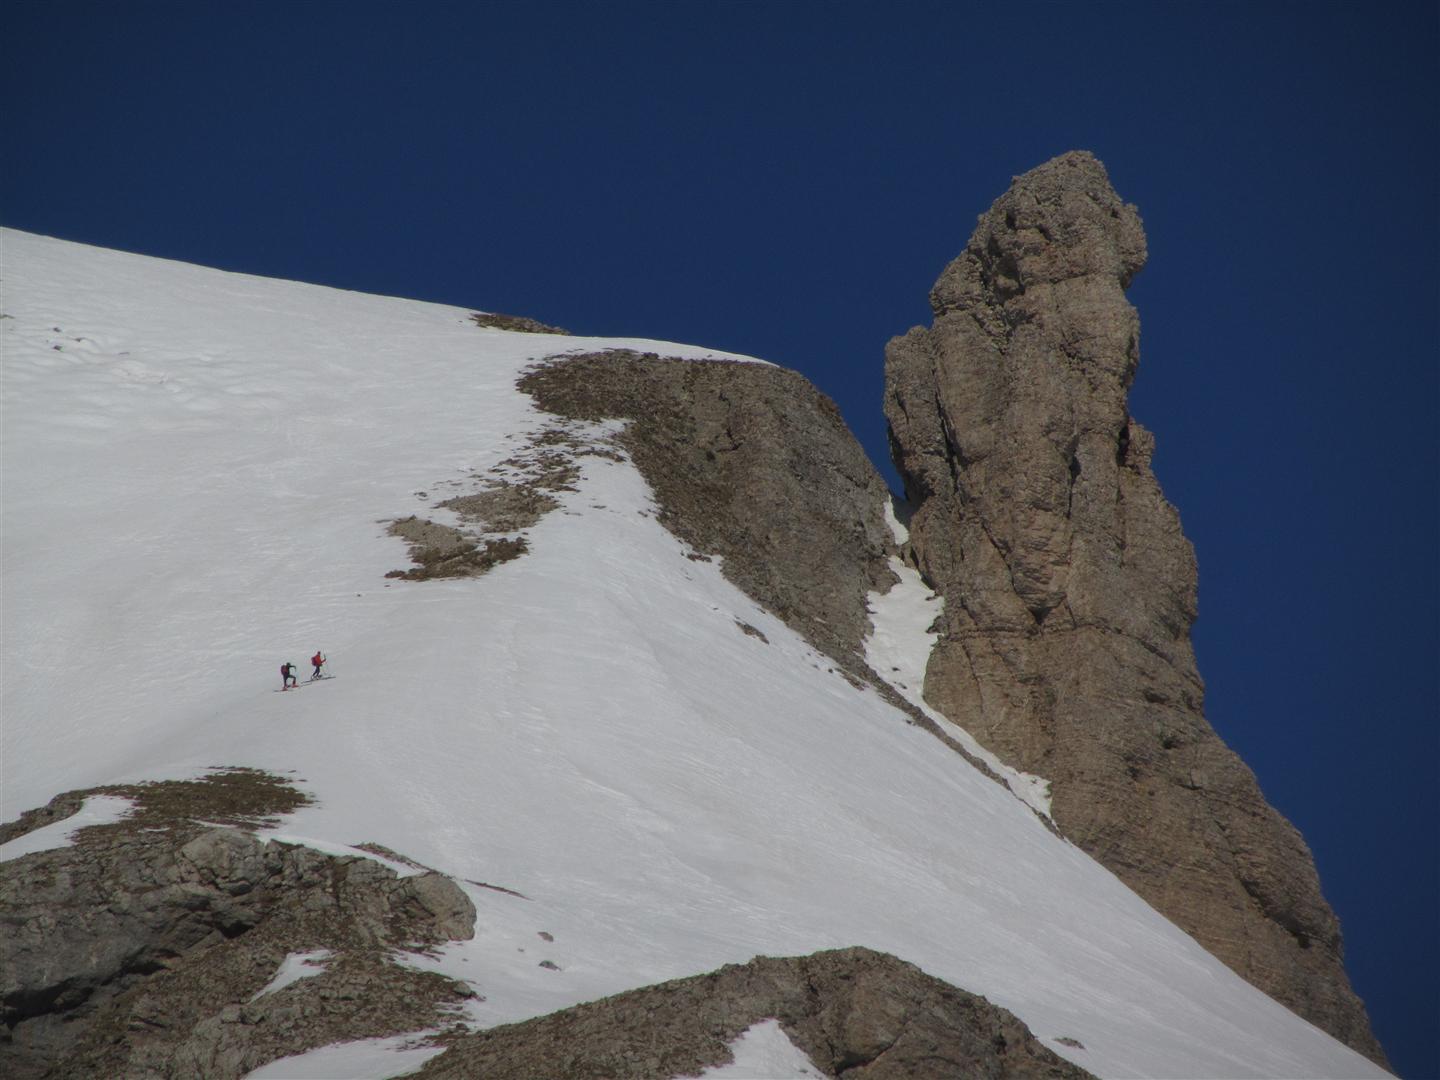 à la montée : à 2000m, vue sur 2 skieurs près de la Demoiselle